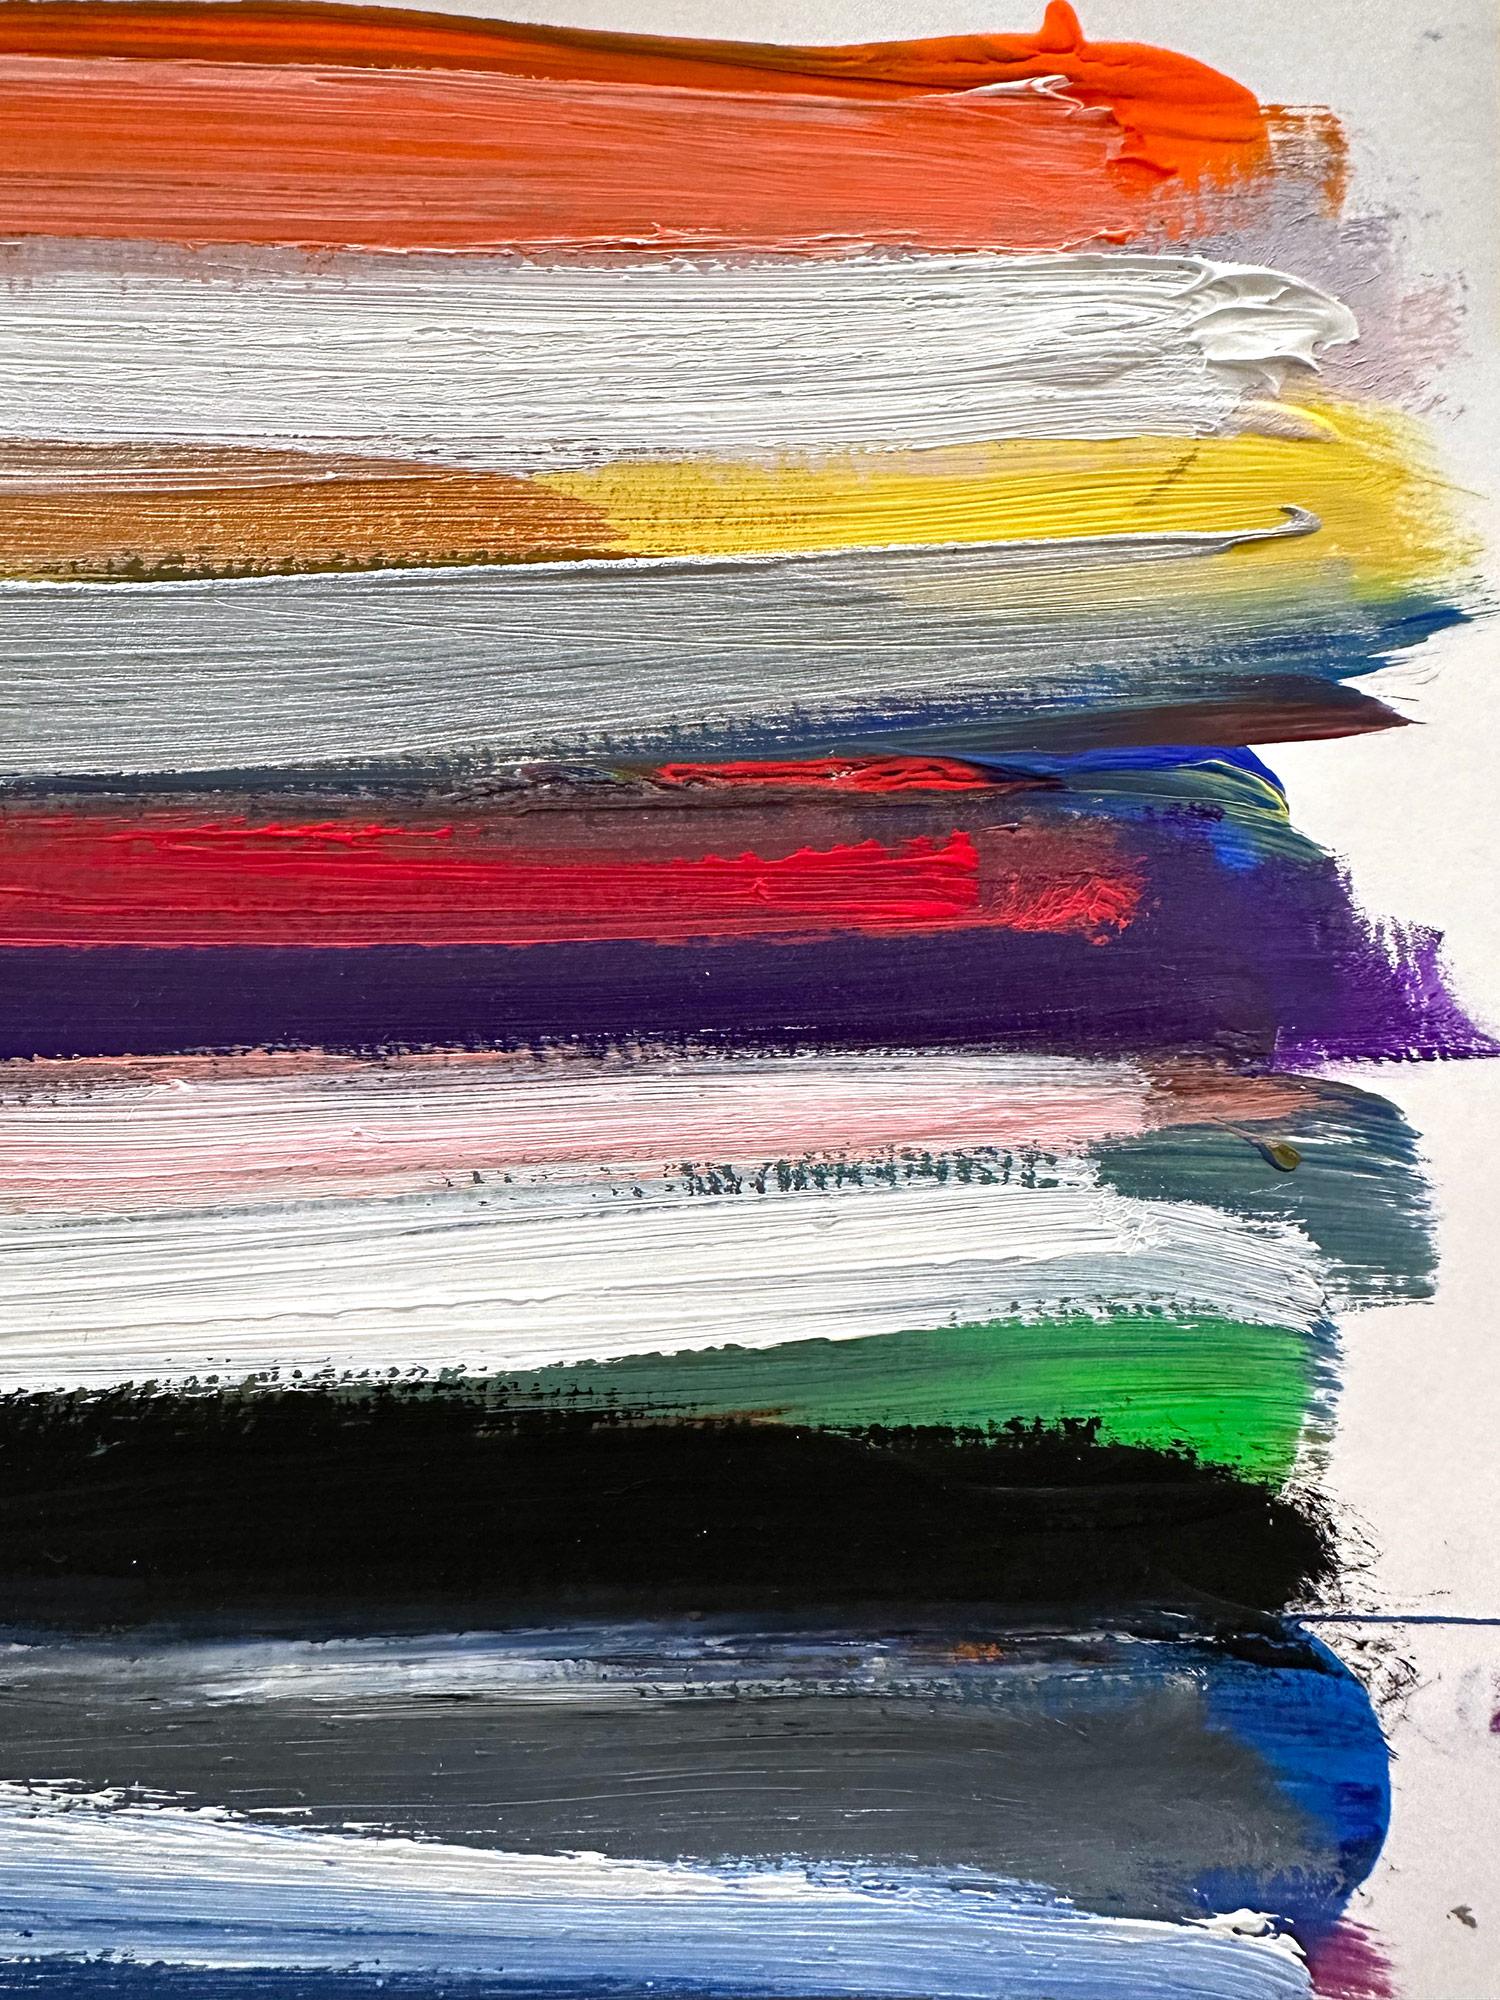 Ein Werk in Acryl und Öl auf schwerem Papier mit leuchtenden Farben und Texturen. Wir konzentrieren uns auf die Einfachheit der Schönheit des Augenblicks, während Shaoul eine durchscheinende, aber sehr farbenfrohe Palette mit dickem Farbauftrag